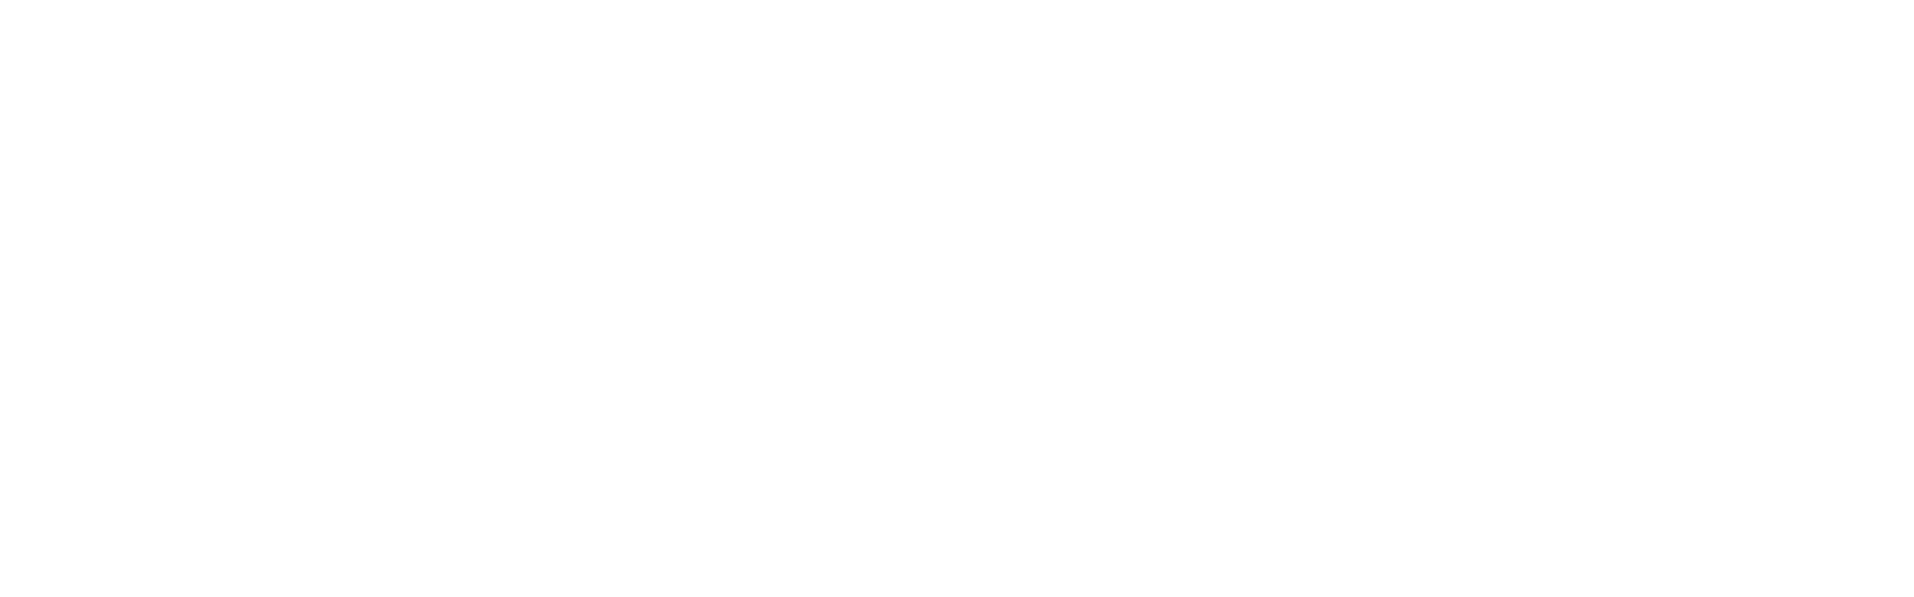 Knaek logo